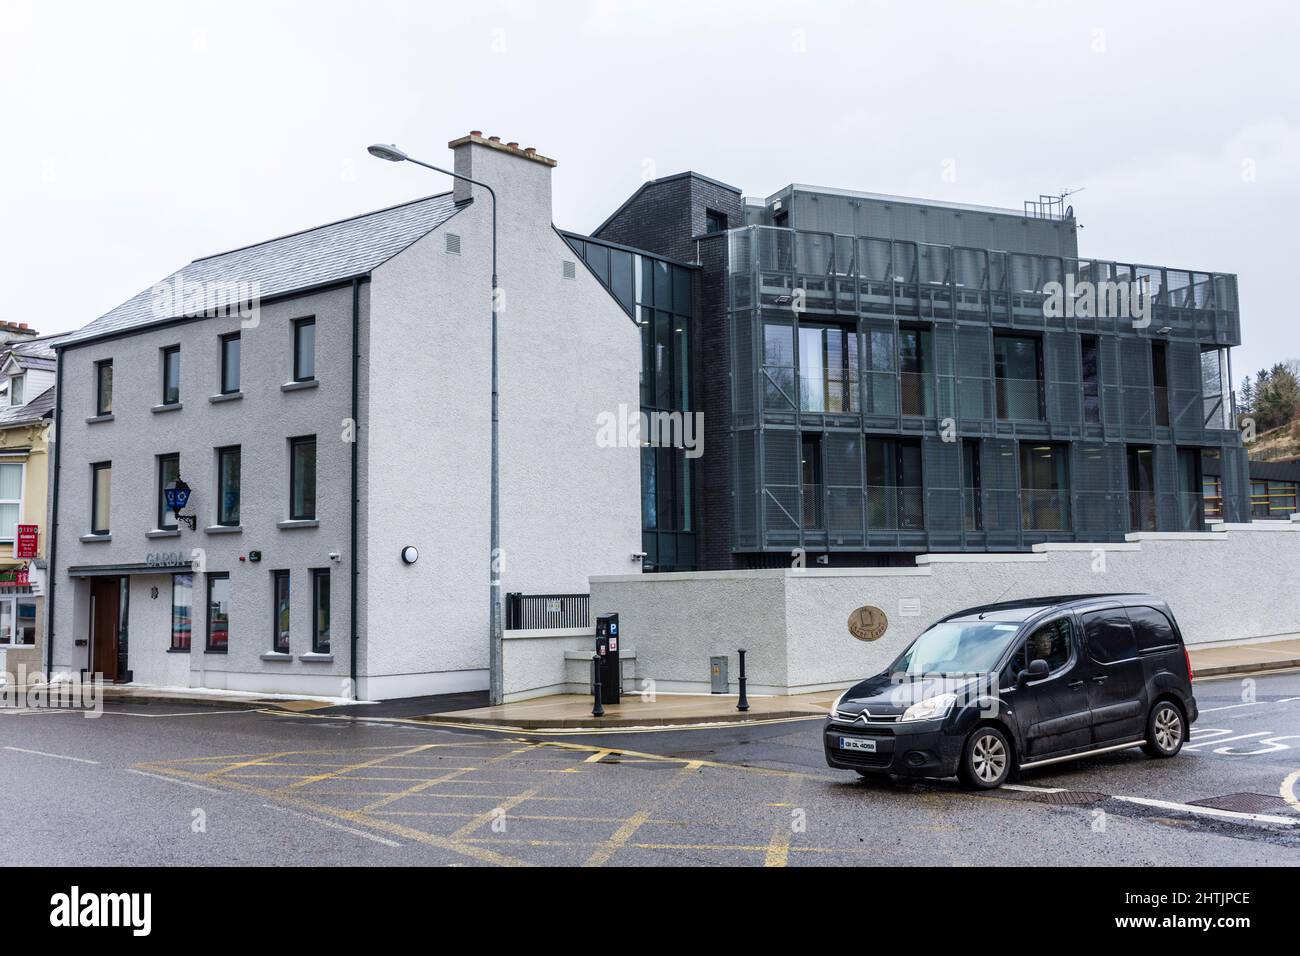 Una stazione di Garda Síochána, ufficio della polizia irlandese, recentemente aggiornato ed esteso, Donegal Town, Contea di Donegal, Irlanda Foto Stock